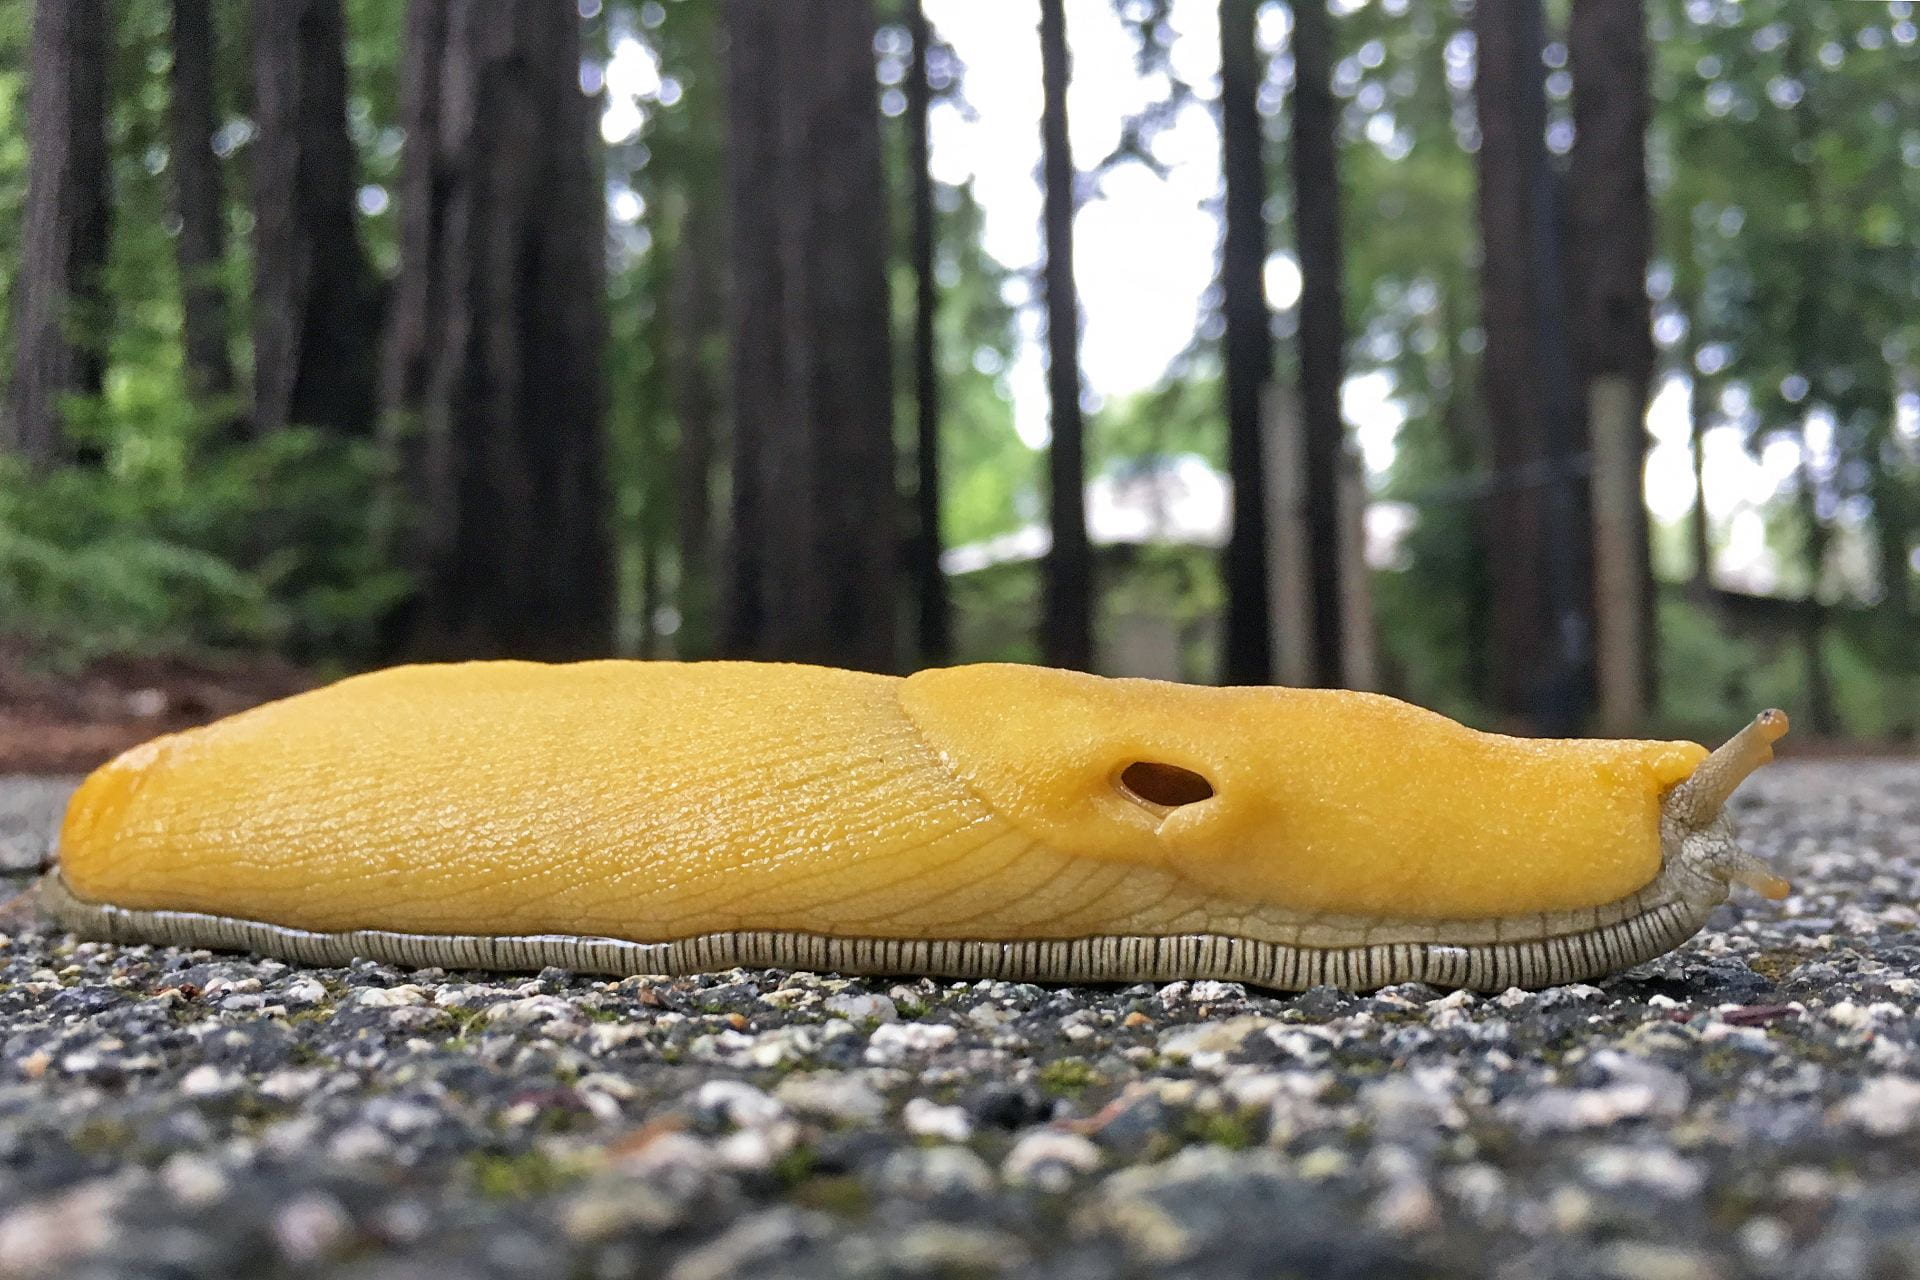 Eye-level close-up shot of banana slug on pavement.